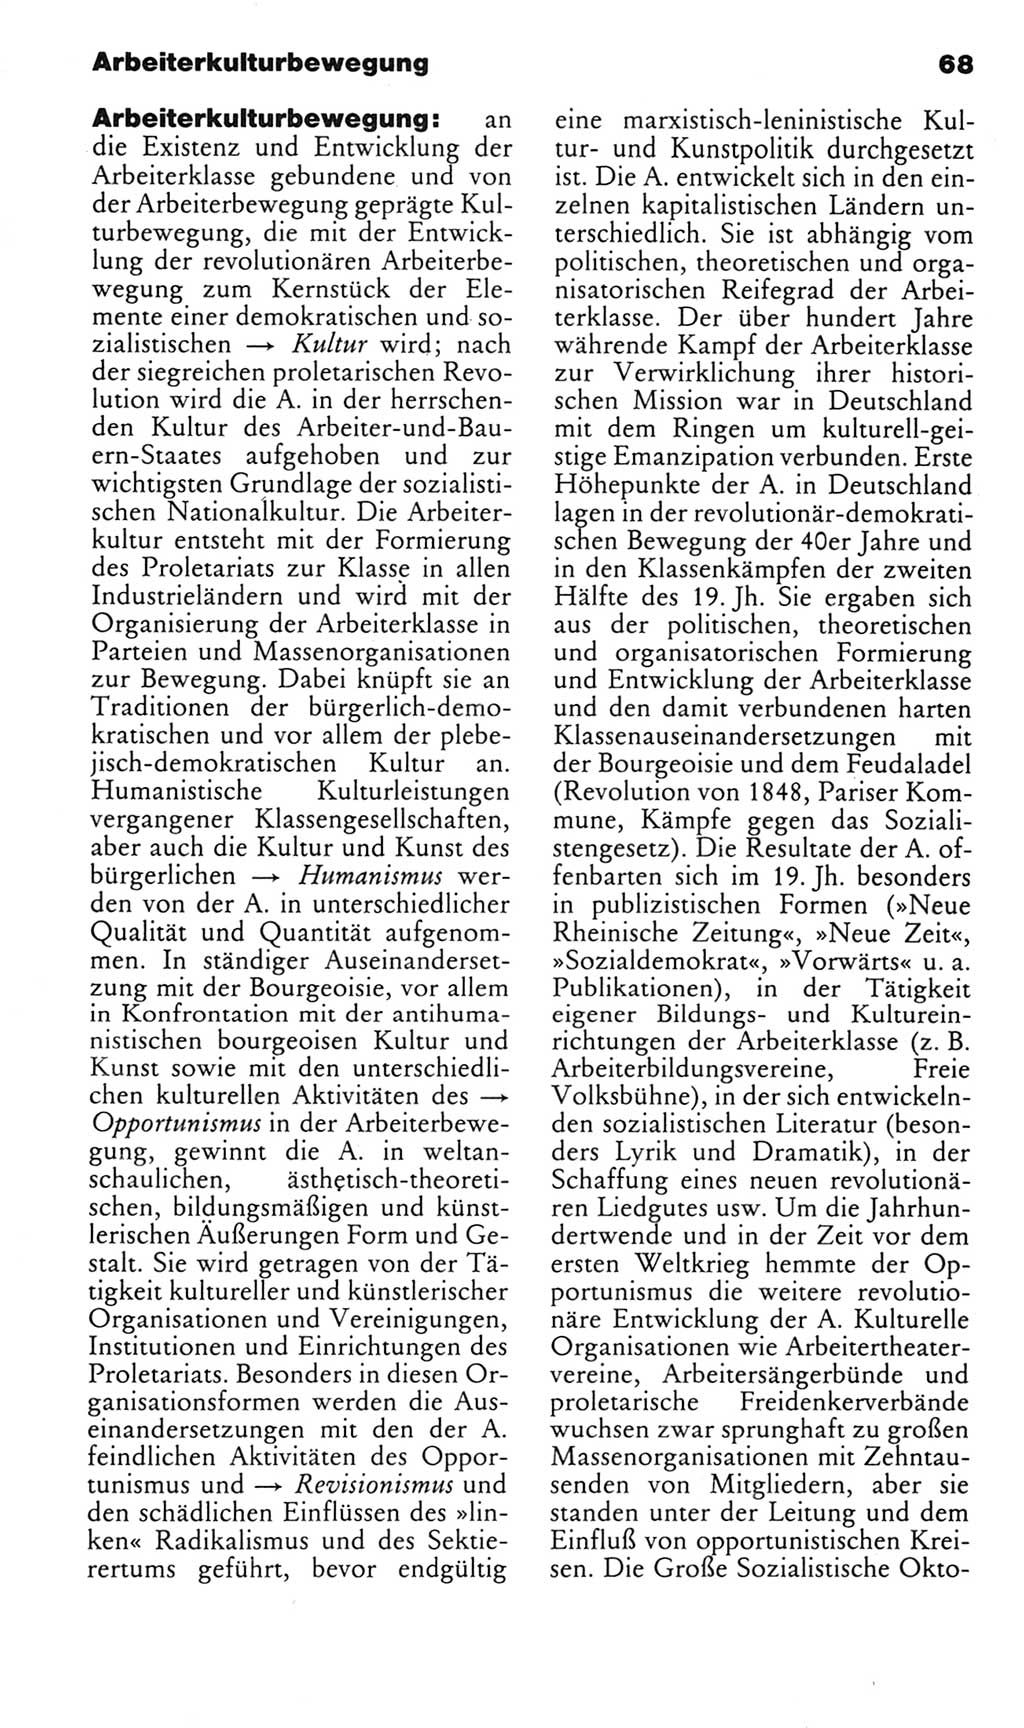 Kleines politisches Wörterbuch [Deutsche Demokratische Republik (DDR)] 1983, Seite 68 (Kl. pol. Wb. DDR 1983, S. 68)